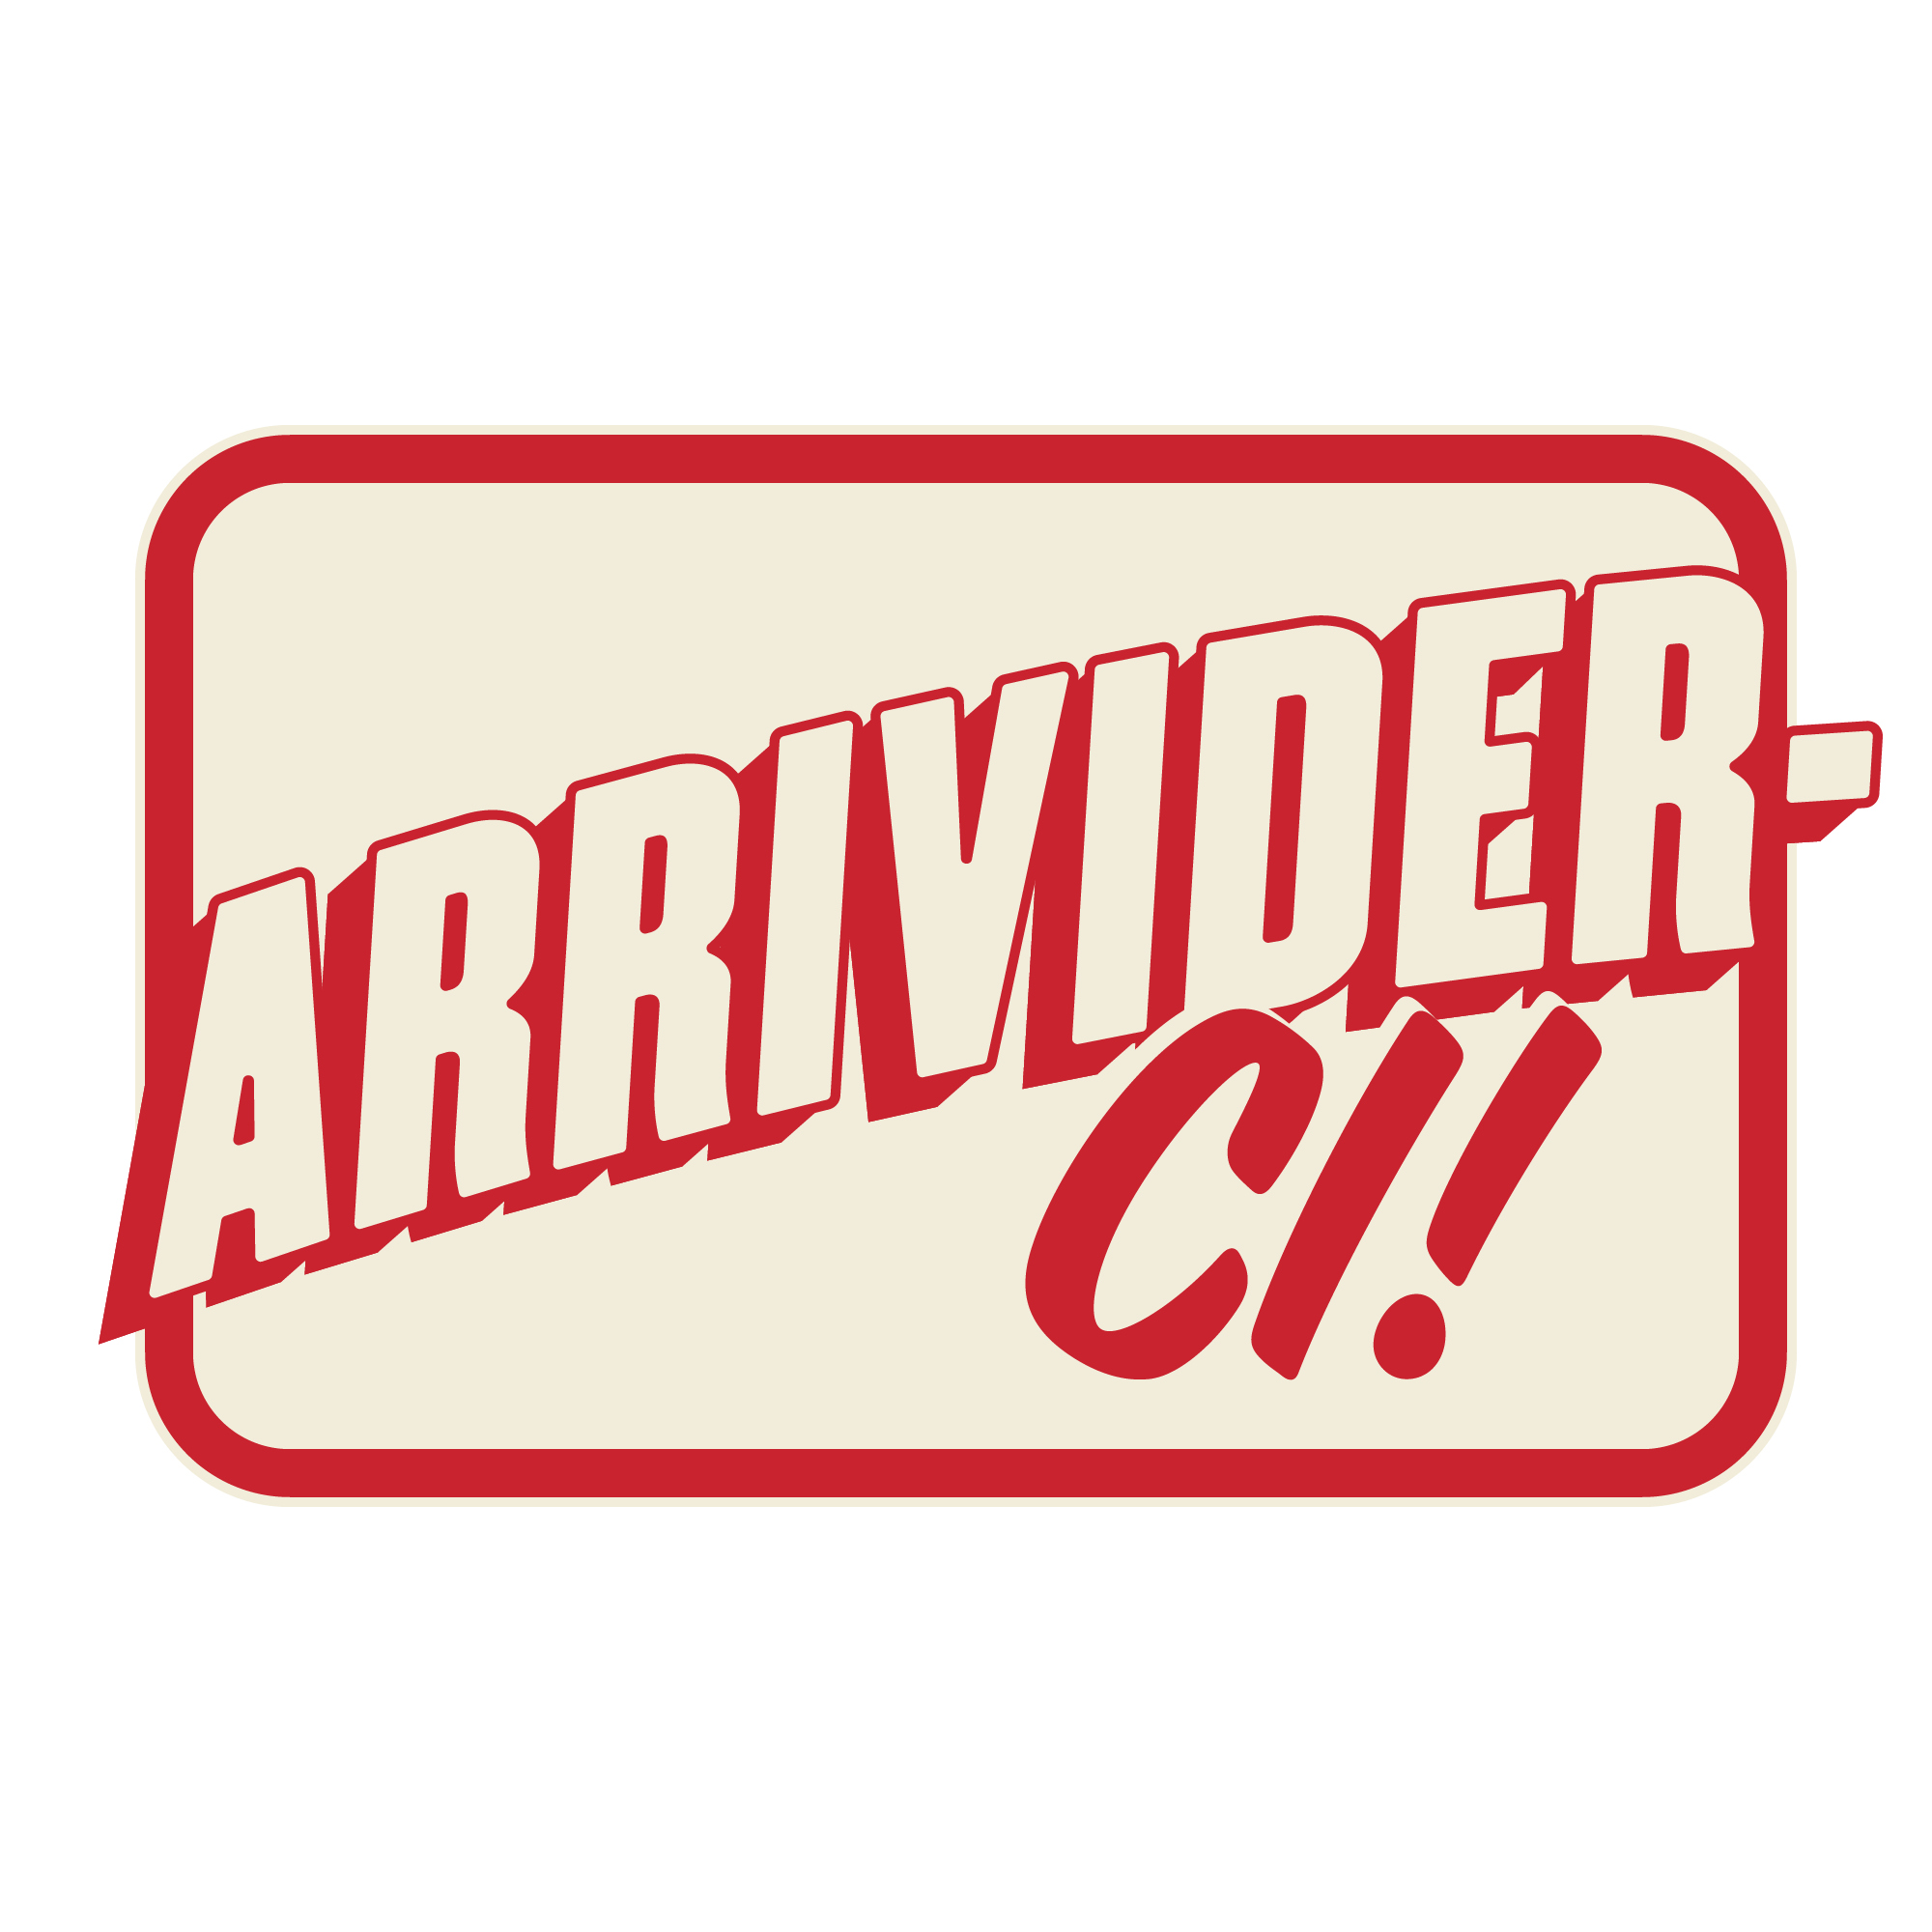 Arrivider-CI.png